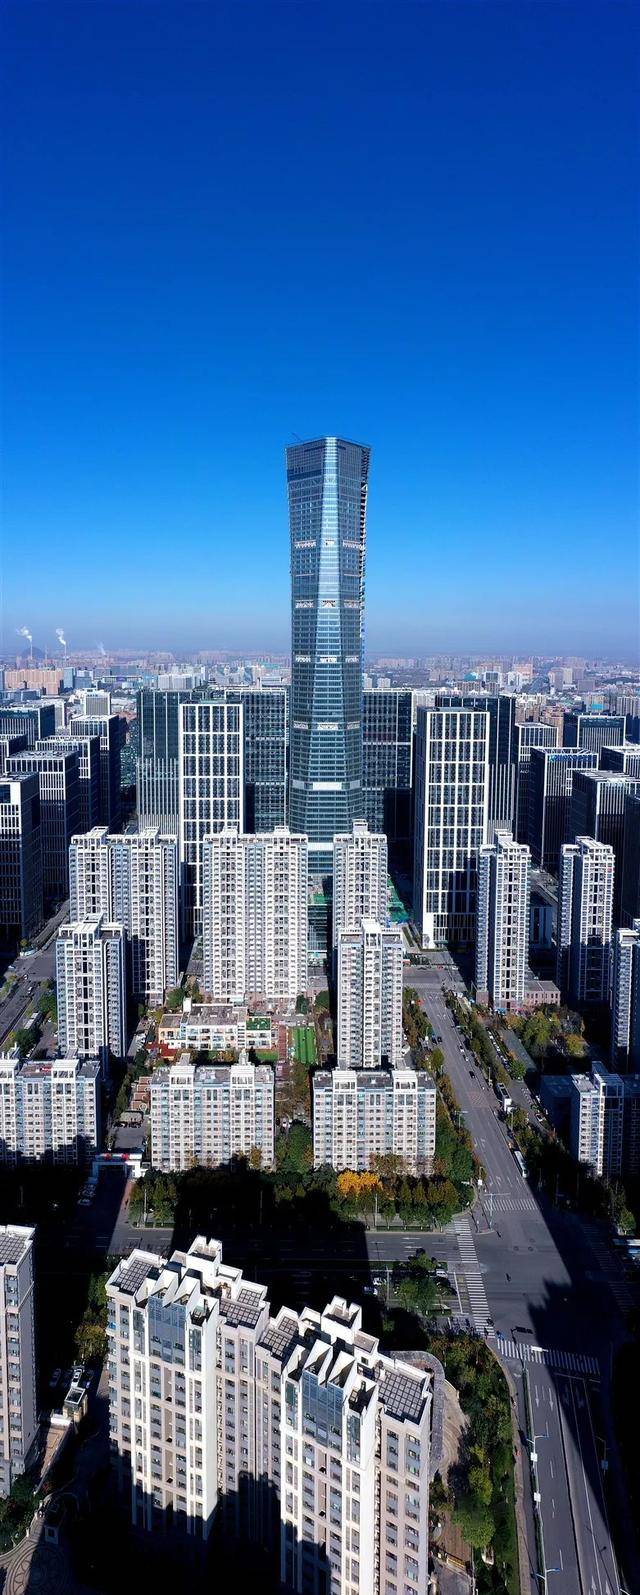 高339米济南第一高楼云鼎大厦形如金箍棒预计年底投用